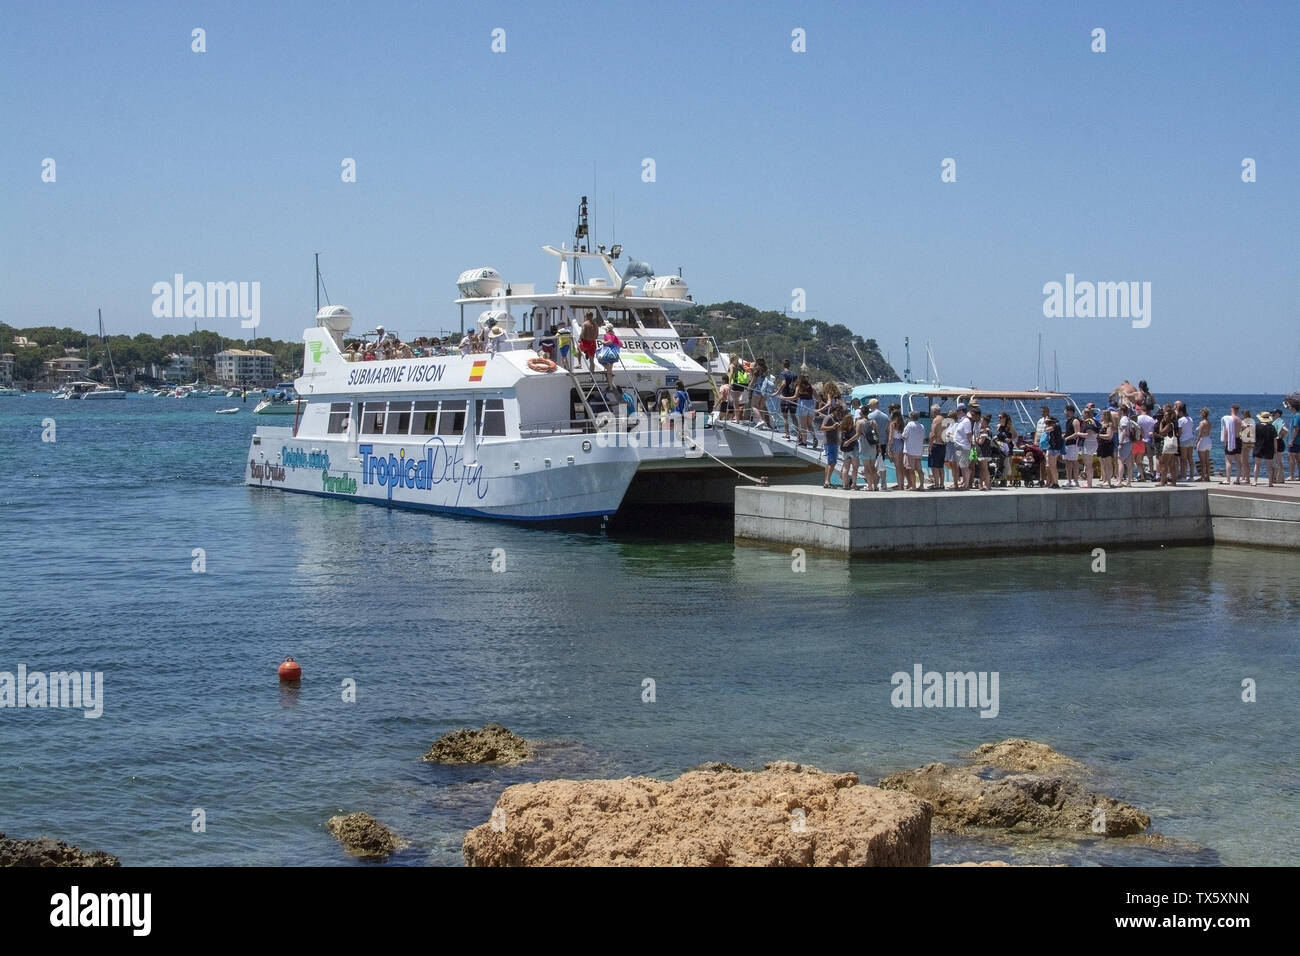 MALLORCA, España - Junio 23, 2019: Los pasajeros en línea para tourboat tropical con Cruceros Cormoran en un día soleado en el mar el 23 de junio de 2019 en Mallorca, S Foto de stock